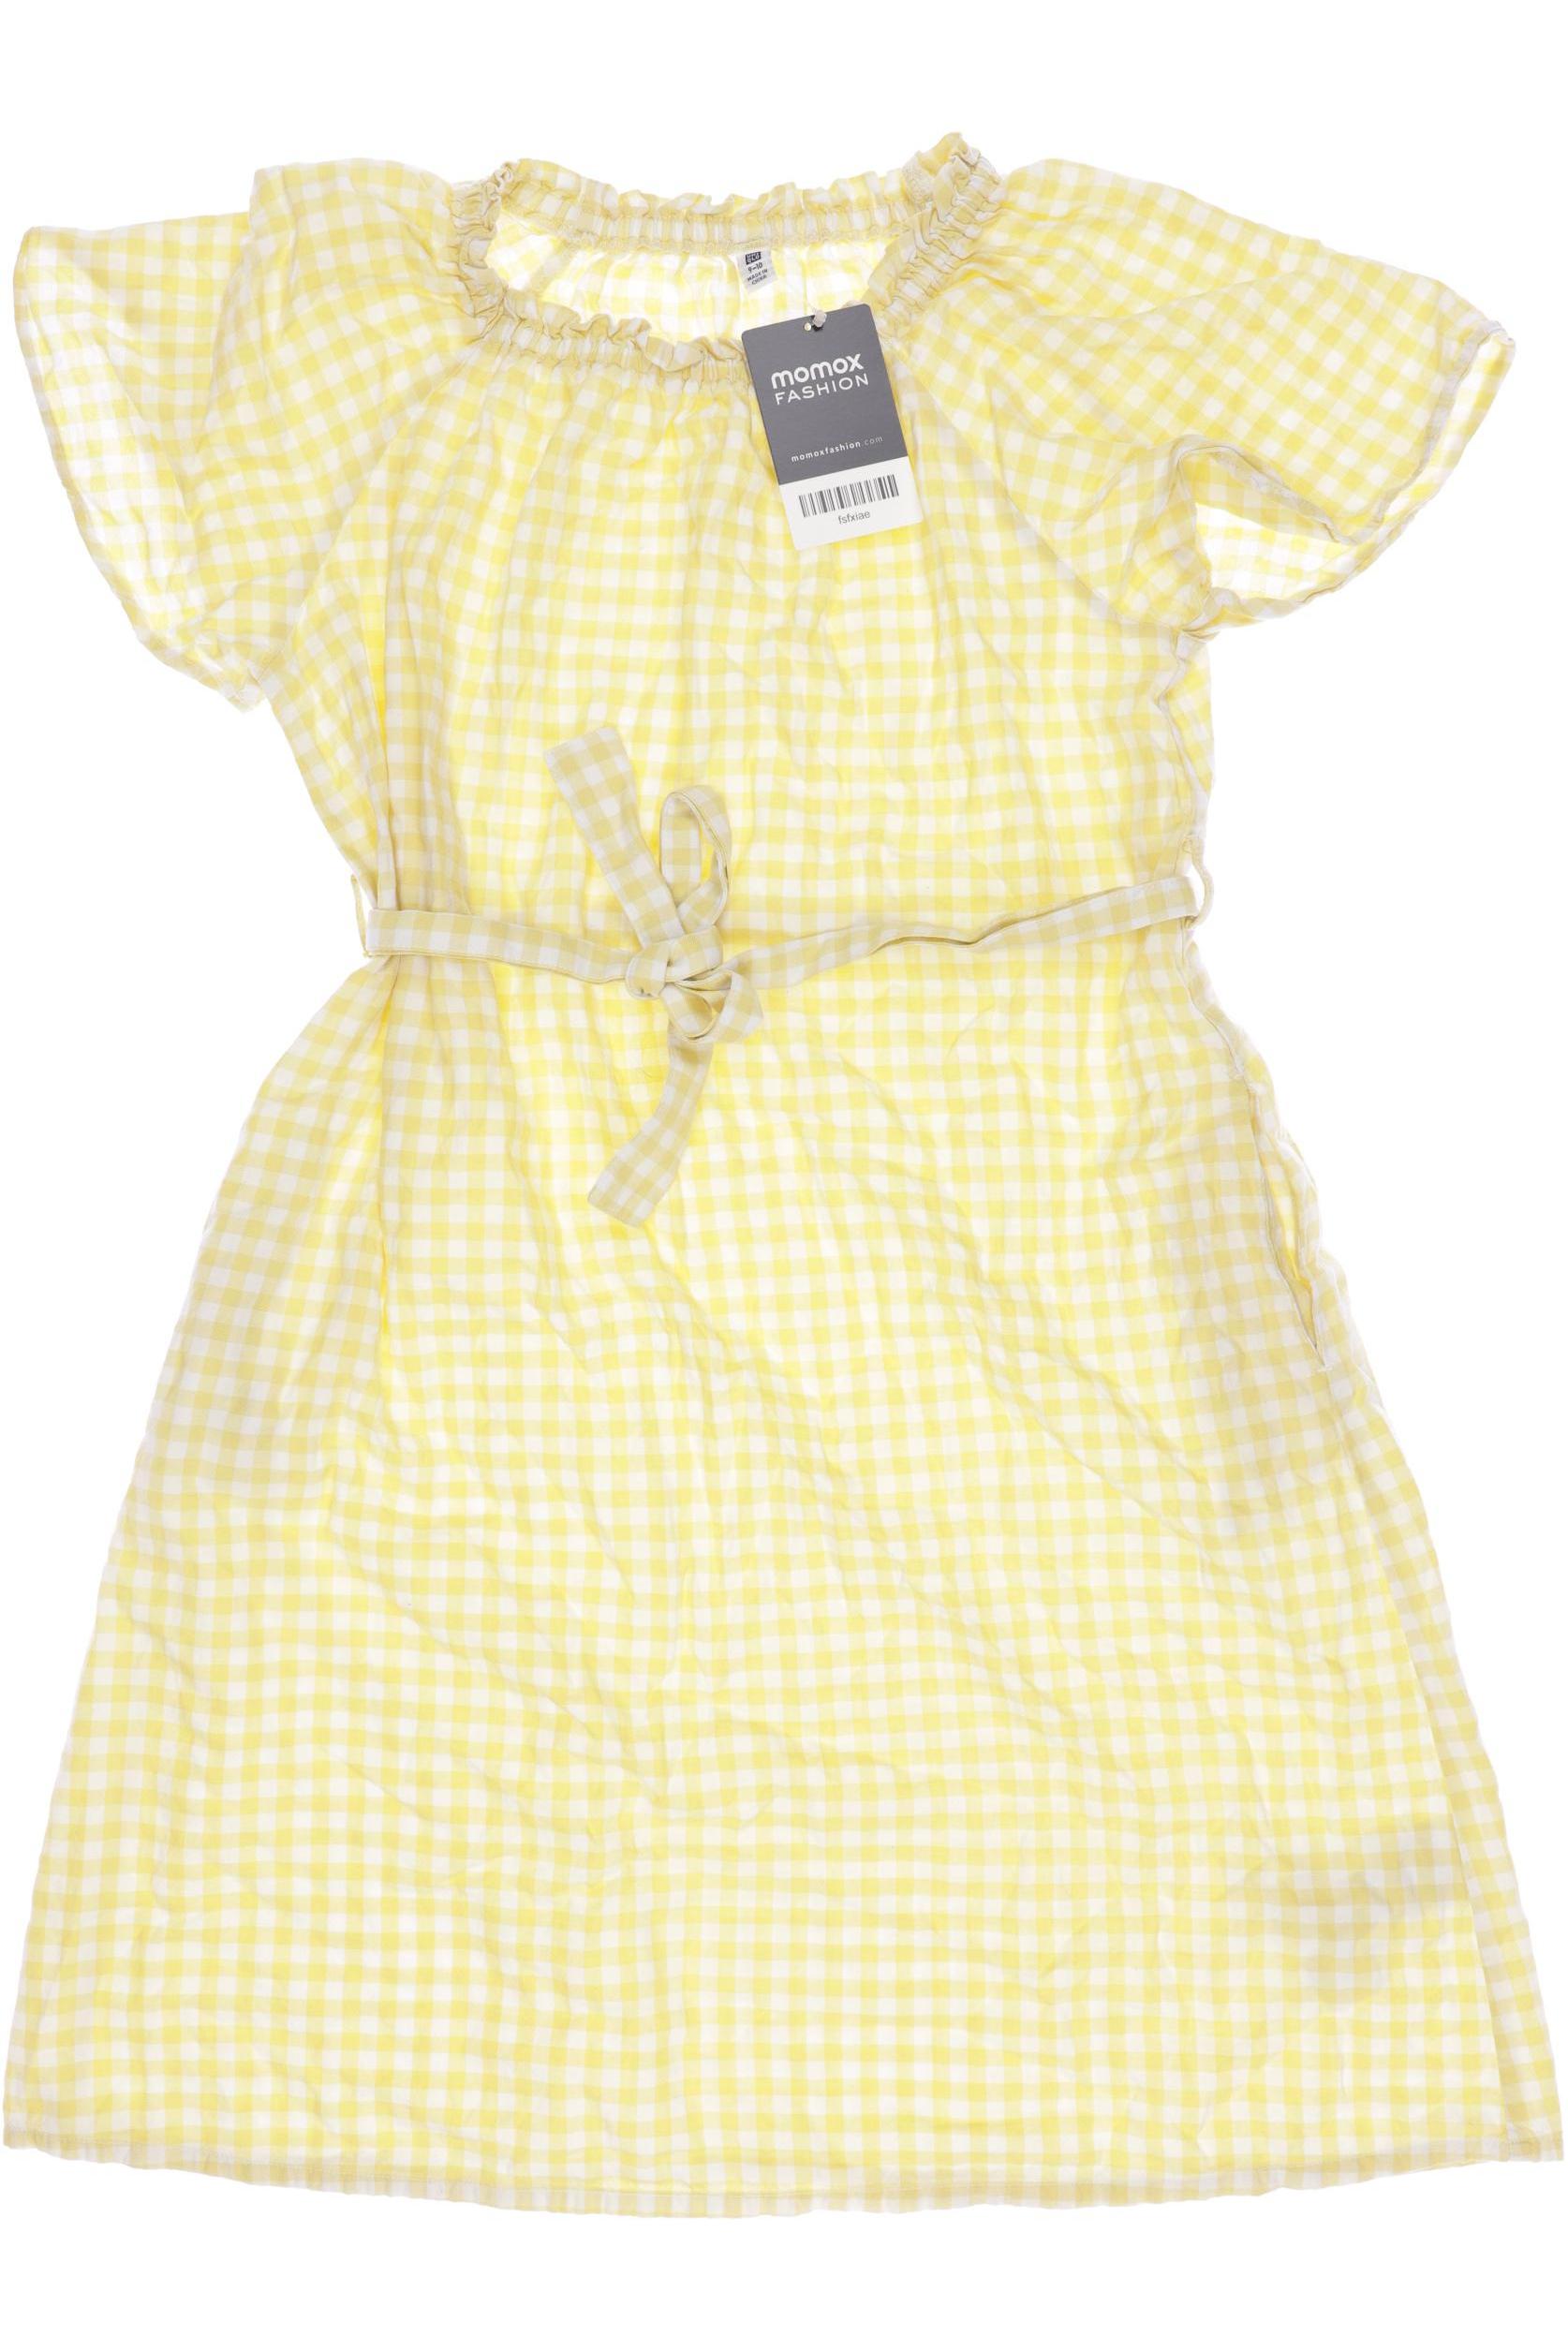 uniqlo Damen Kleid, gelb, Gr. 140 von uniqlo